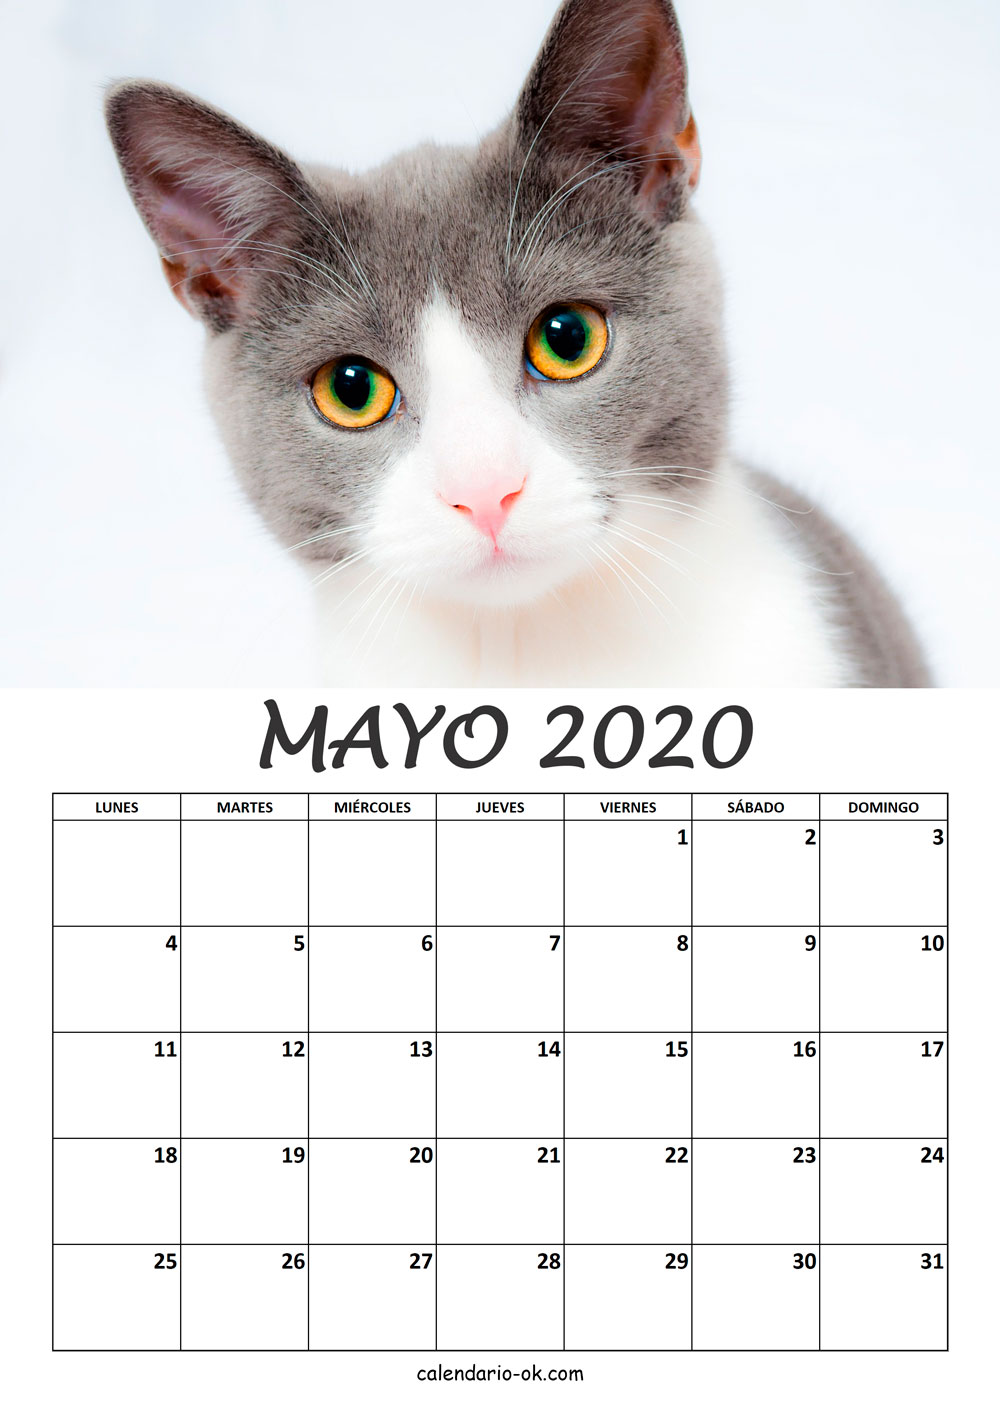 Calendario MAYO 2020 de GATOS